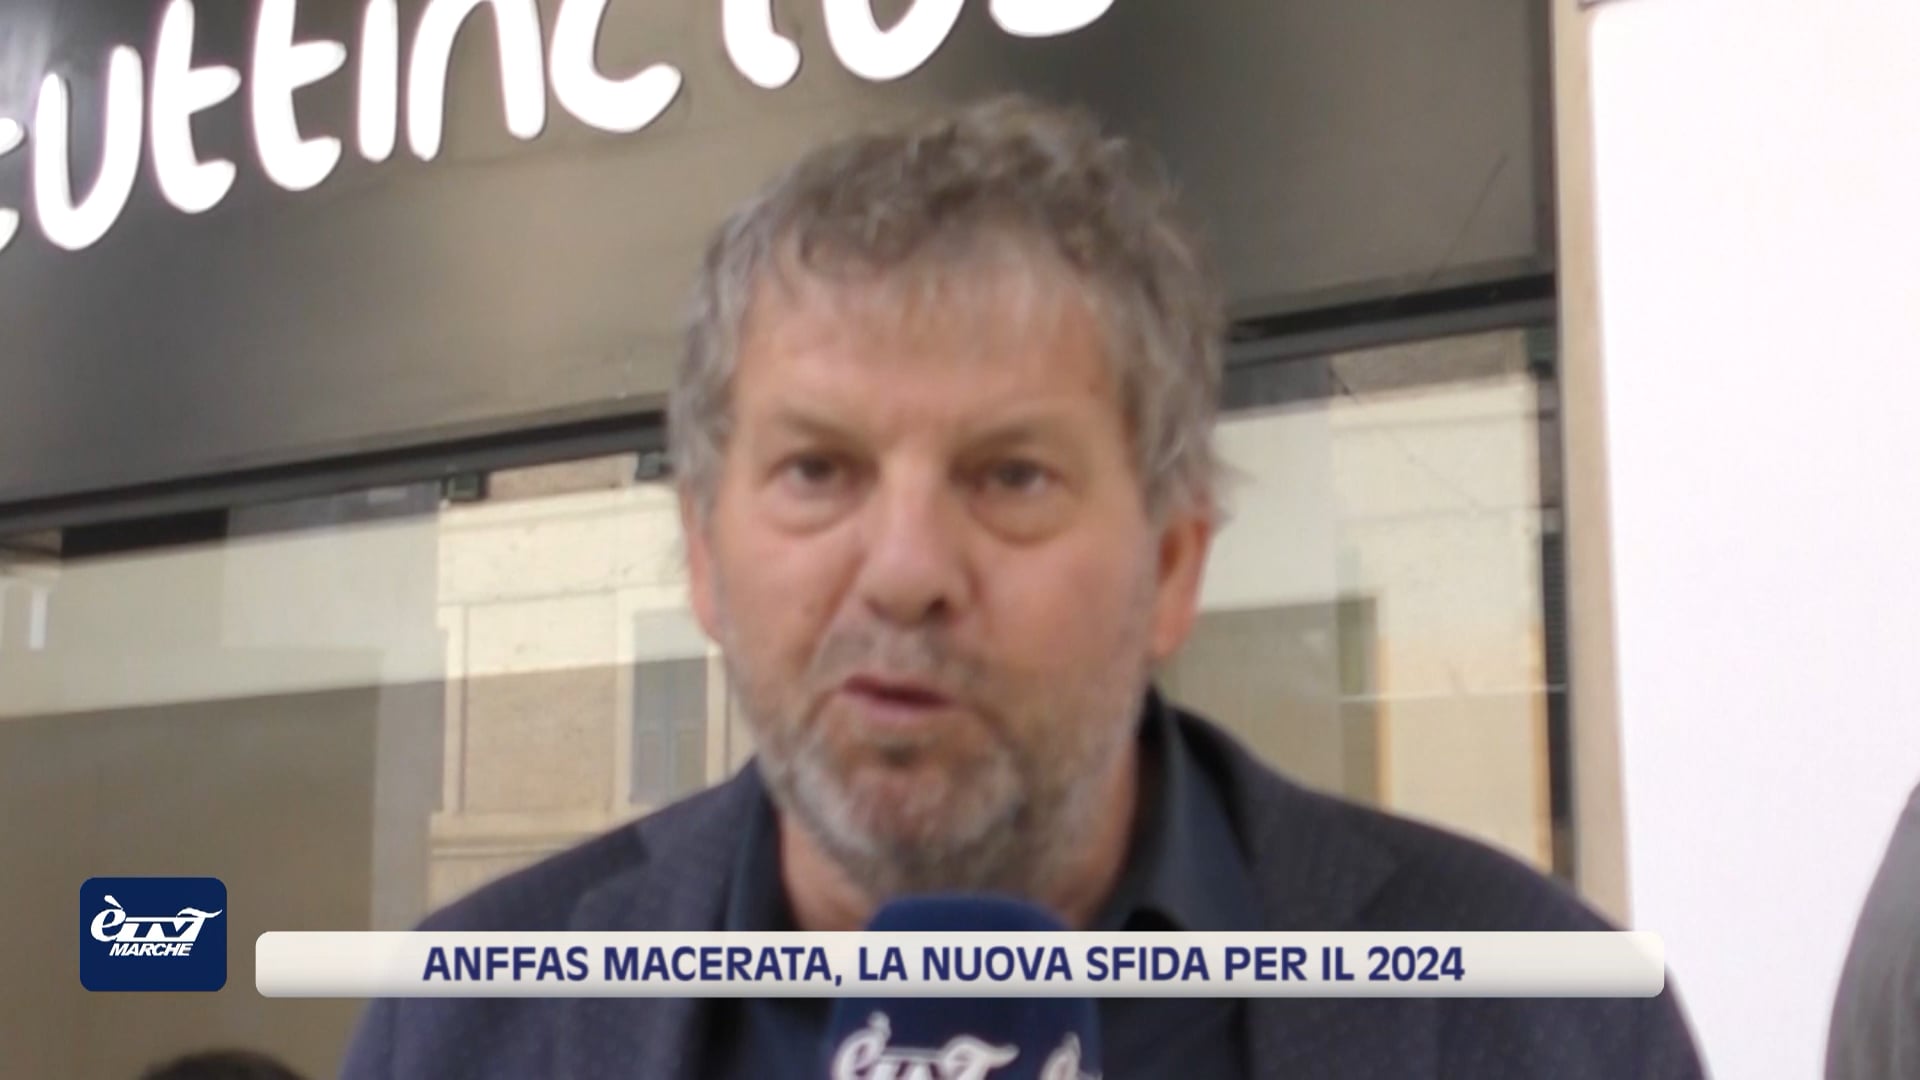 Anffas Macerata, la nuova sfida per il 2024 - VIDEO